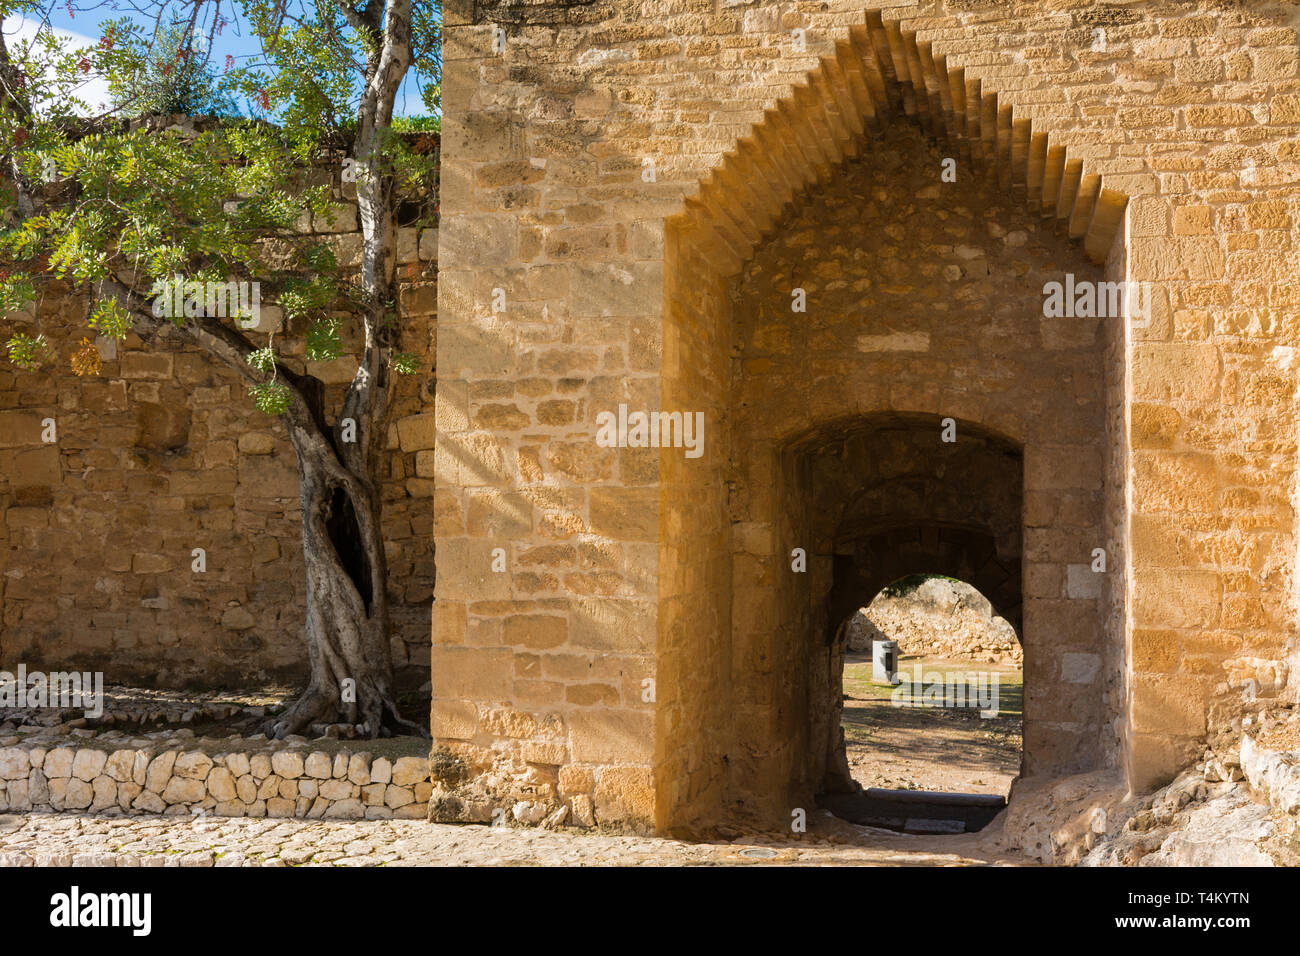 Denia Alicante, Spagna, 21 novembre 2018: ingresso all'Alcazaba, recinto fortificato dentro una città murata nel castello. Archi da differenti per Foto Stock